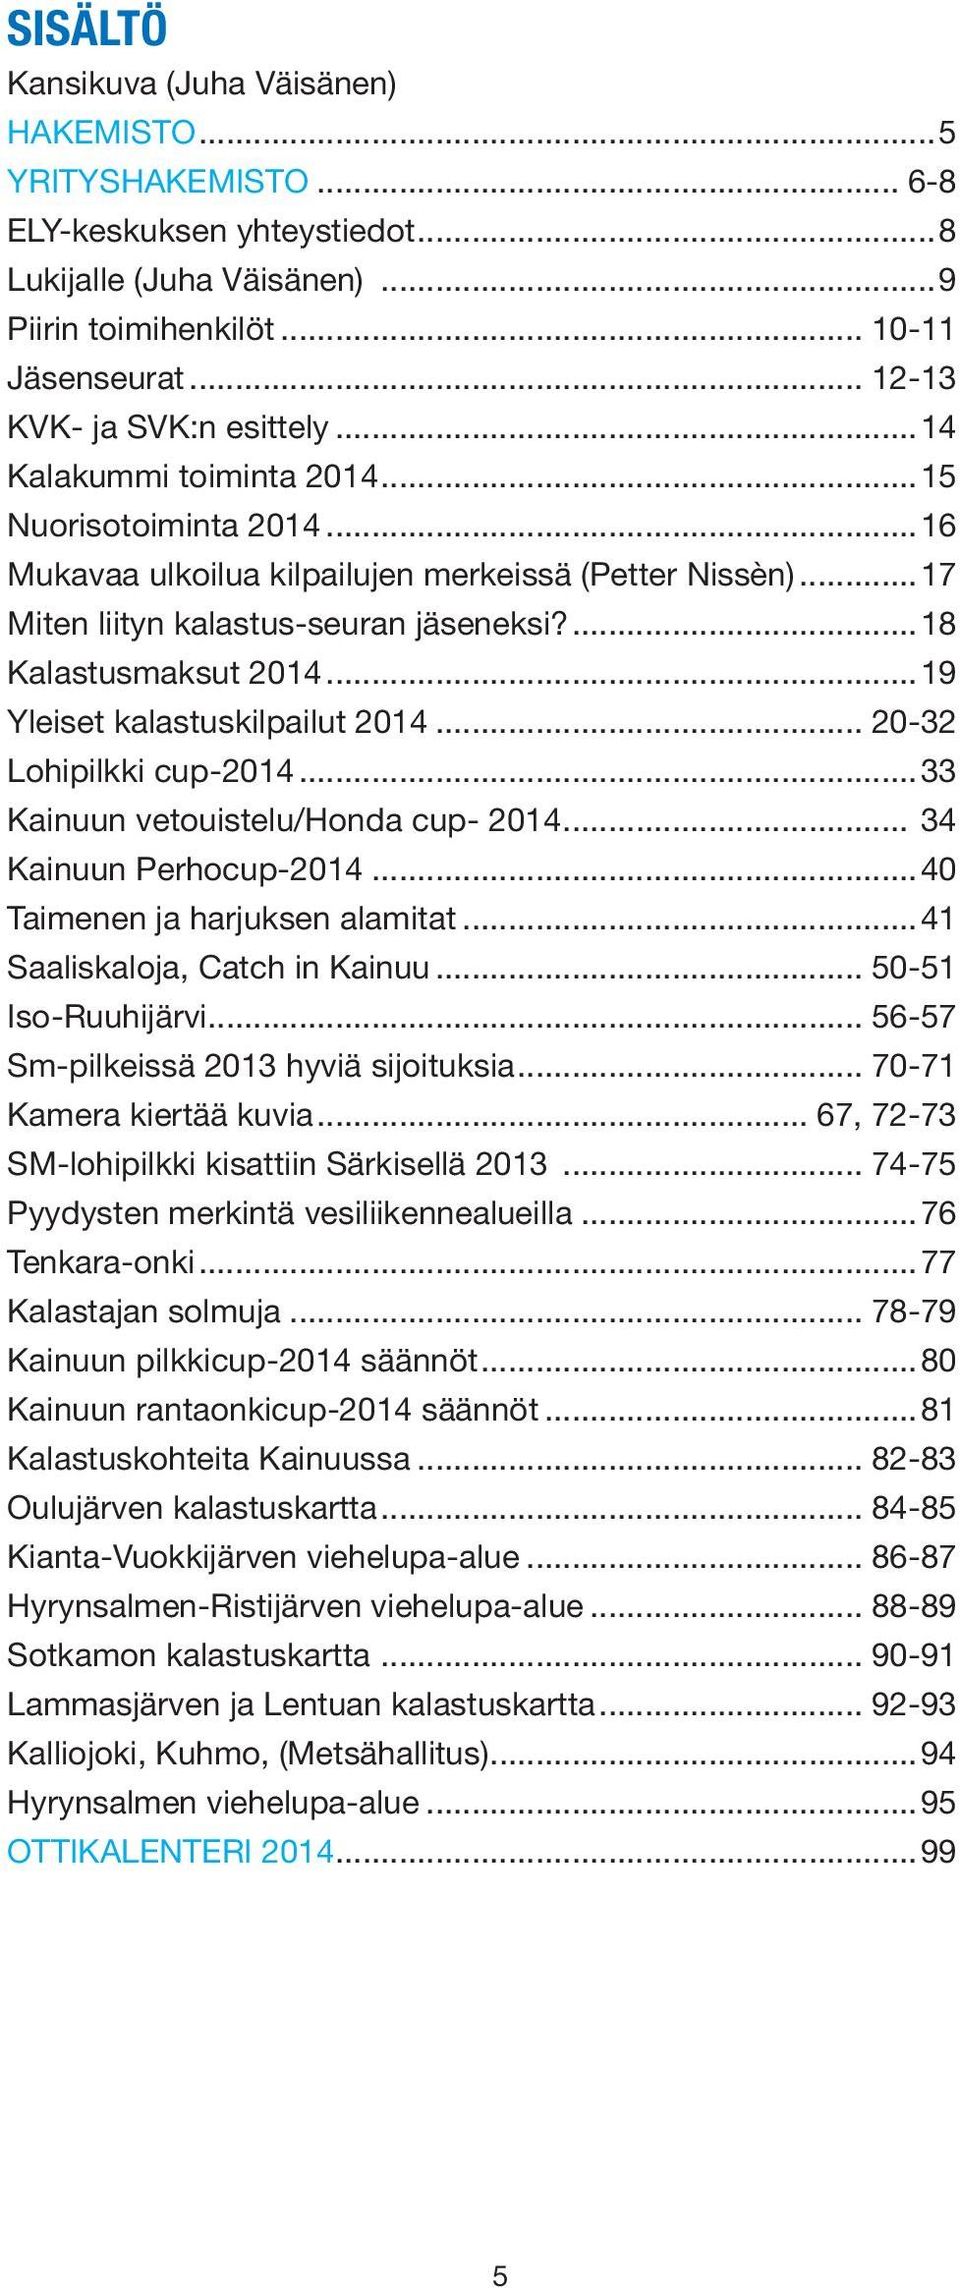 ...18 Kalastusmaksut 2014...19 Yleiset kalastuskilpailut 2014... 20-32 Lohipilkki cup-2014...33 Kainuun vetouistelu/honda cup- 2014... 34 Kainuun Perhocup-2014...40 Taimenen ja harjuksen alamitat.